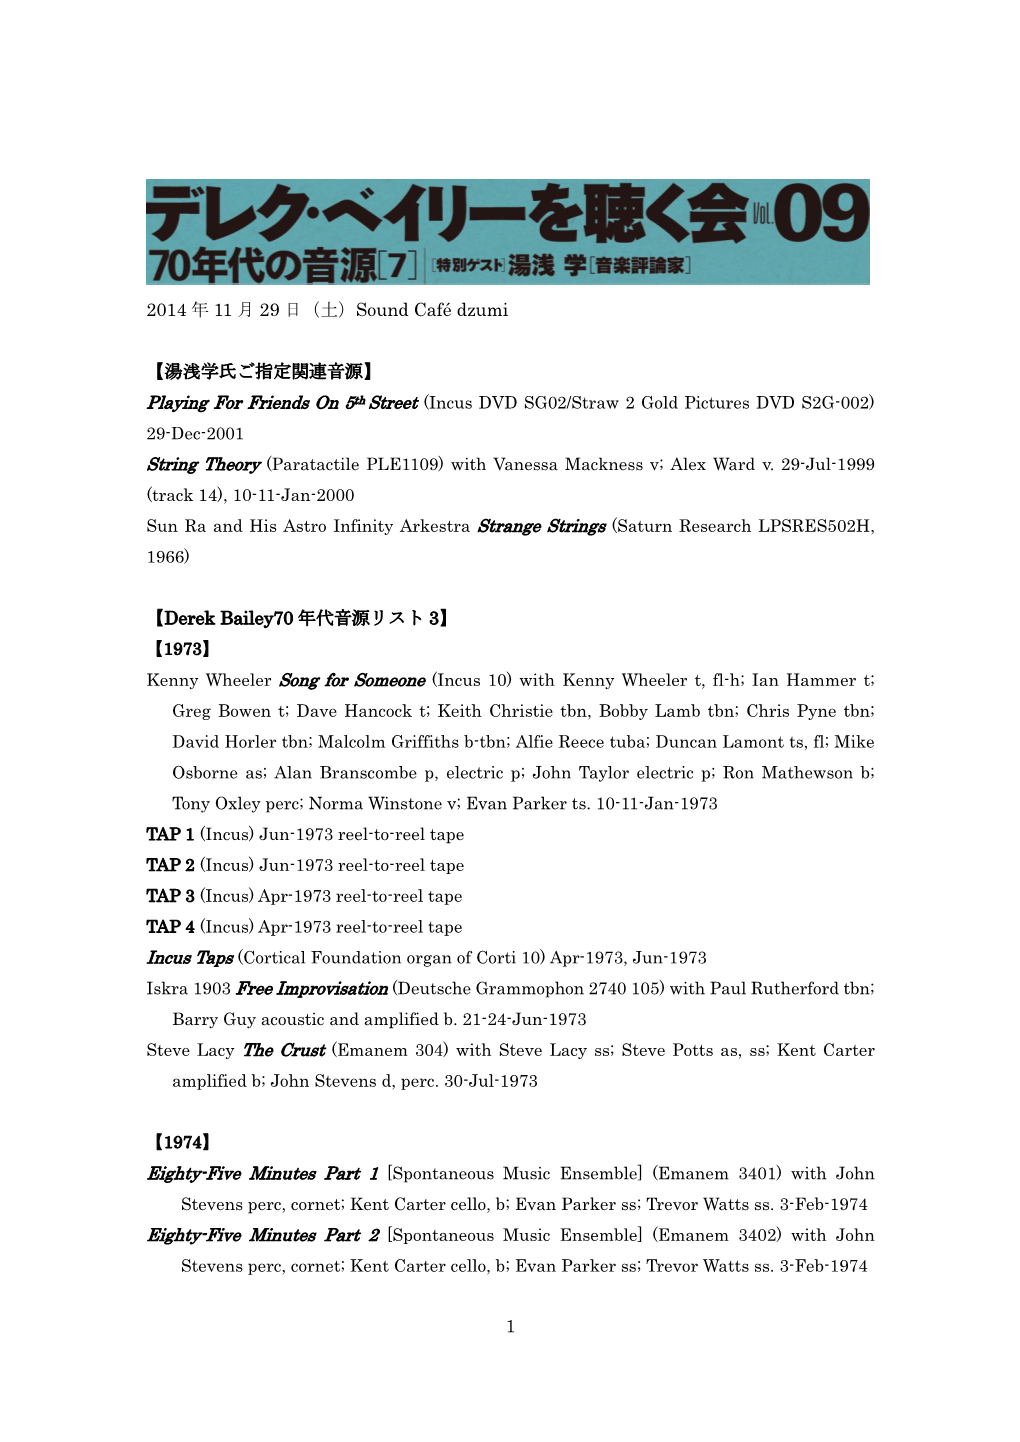 1 2014 年 11 月 29 日（土）Sound Café Dzumi 【湯浅学氏ご指定関連音源】 【Derek Bailey70 年代音源リス